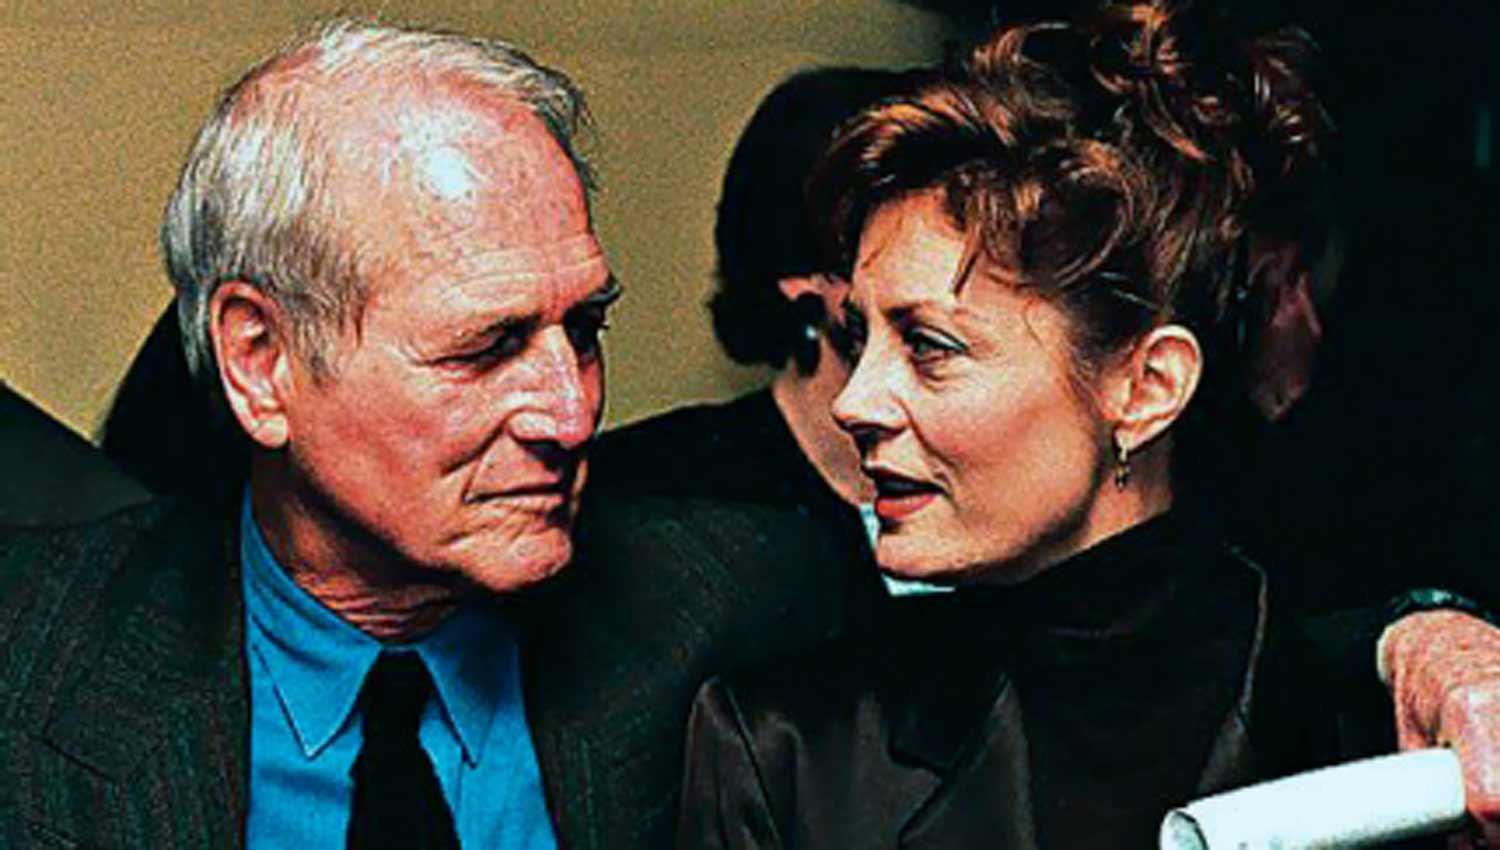 COMPAÑERO. Paul Newman ayudó a Susan Sarandon cuando ella se enteró que ganaba menos que él por un trabajo en la misma película. (EXCLUSIVA DIGITAL)